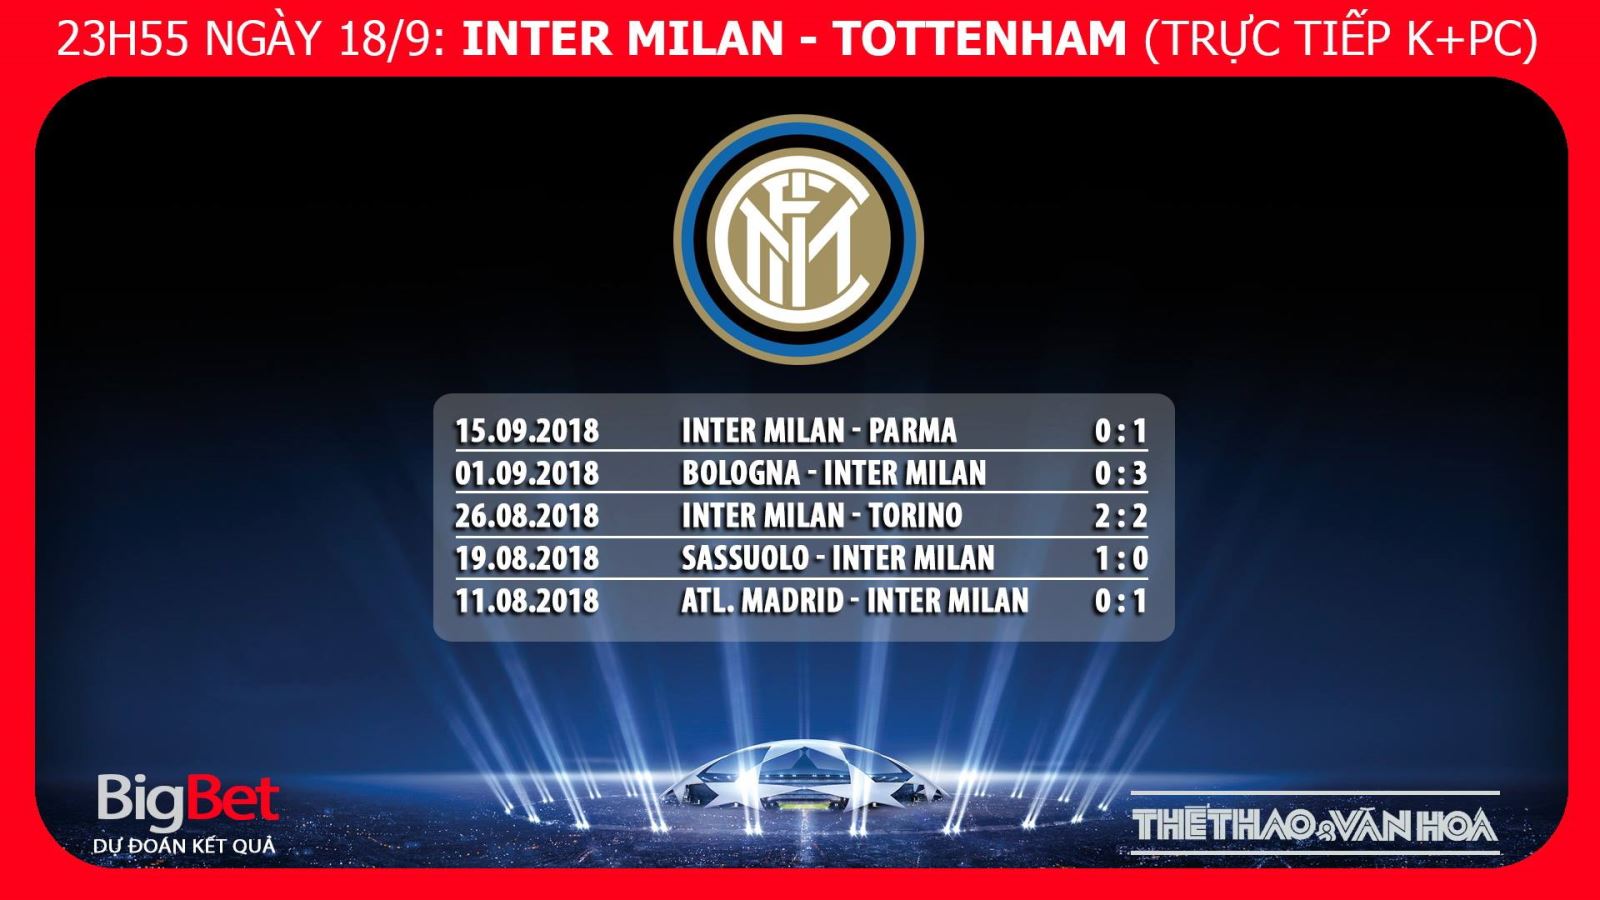 Soi kèo Inter Milan vs Tottenham. Nhận định Inter Milan vs Tottenham